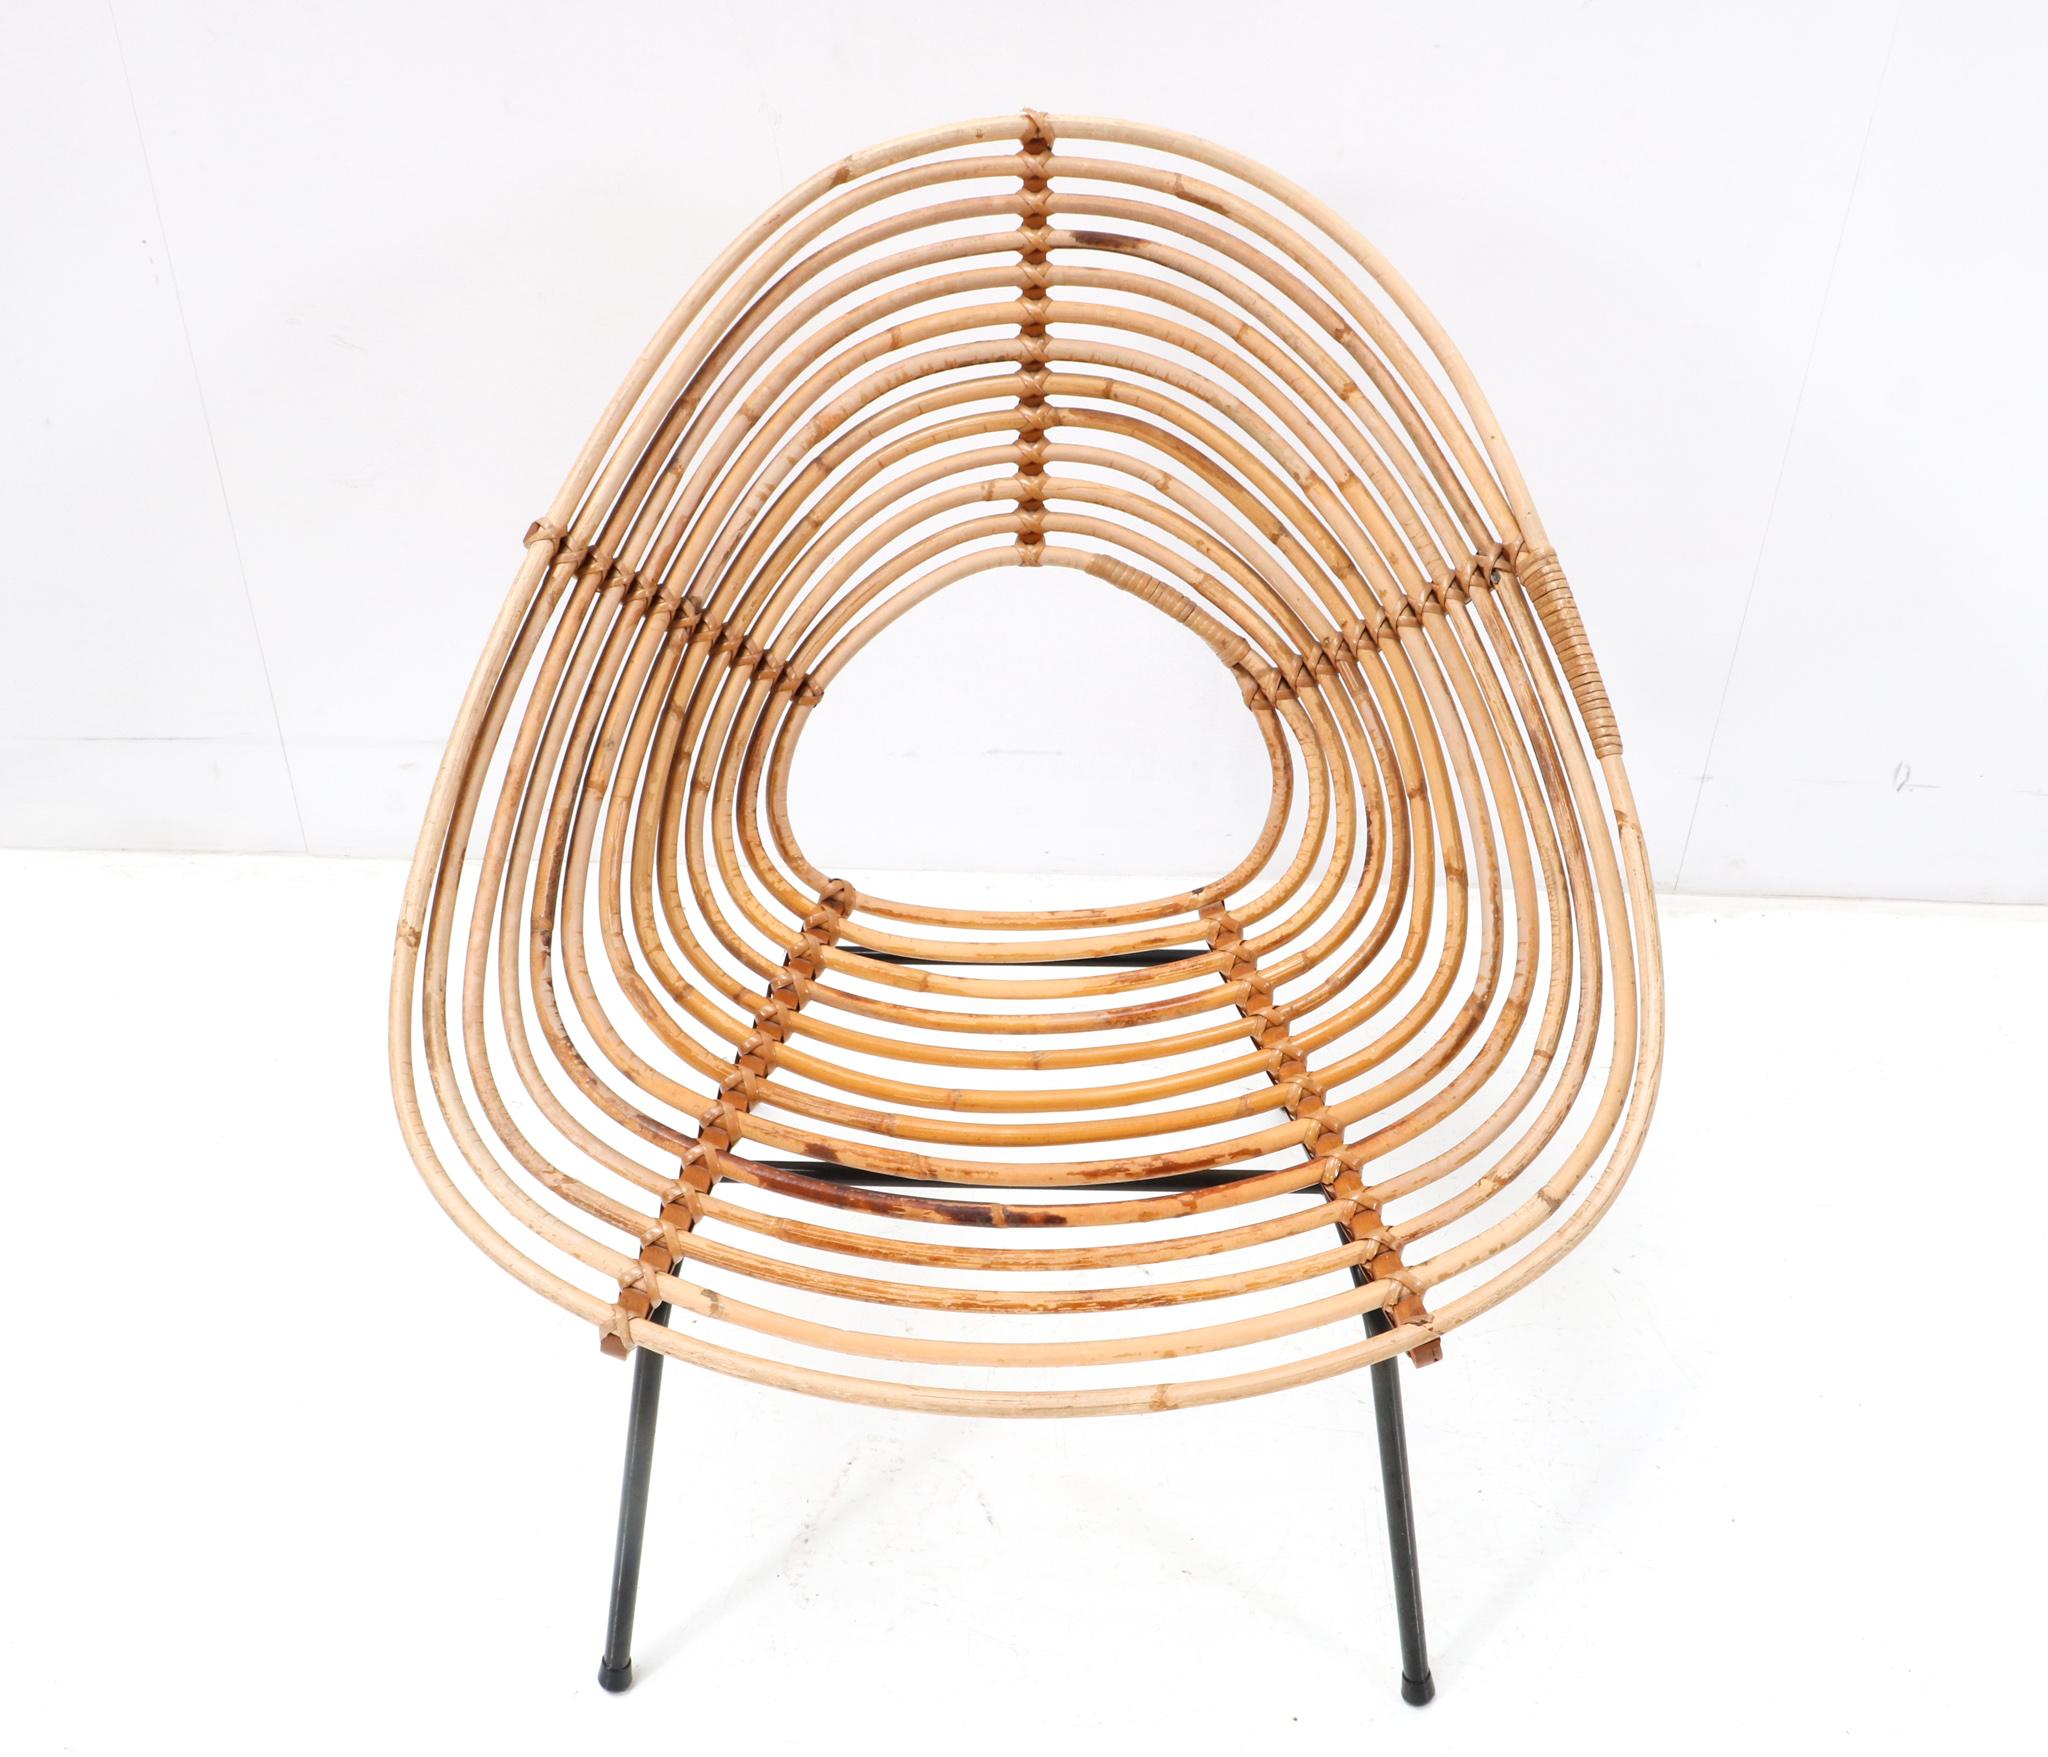 Erstaunlicher und seltener Mid-Century Modern Lounge Chair.
Design von Dirk van Sliedregt für Rohe Noordwolde.
Auffälliges niederländisches Design aus den 1950er Jahren.
Elegantes ballonförmiges Rattangestell auf schwarz lackierten